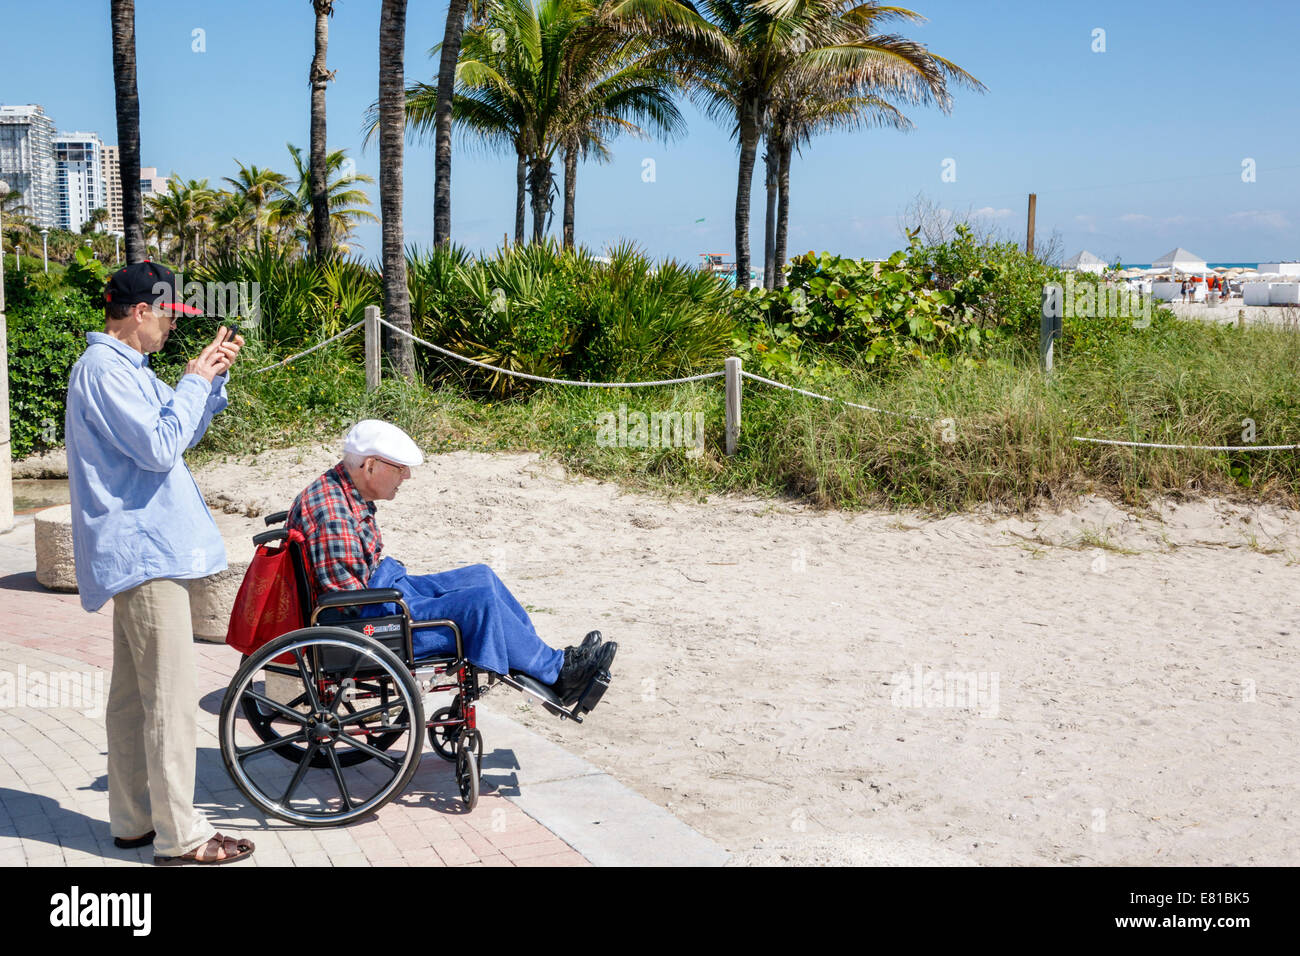 Miami Beach Florida,uomo uomini maschio,adulto figlio,anziano anziani cittadini,anziani,sedia a rotelle,vecchio,FL140305044 Foto Stock